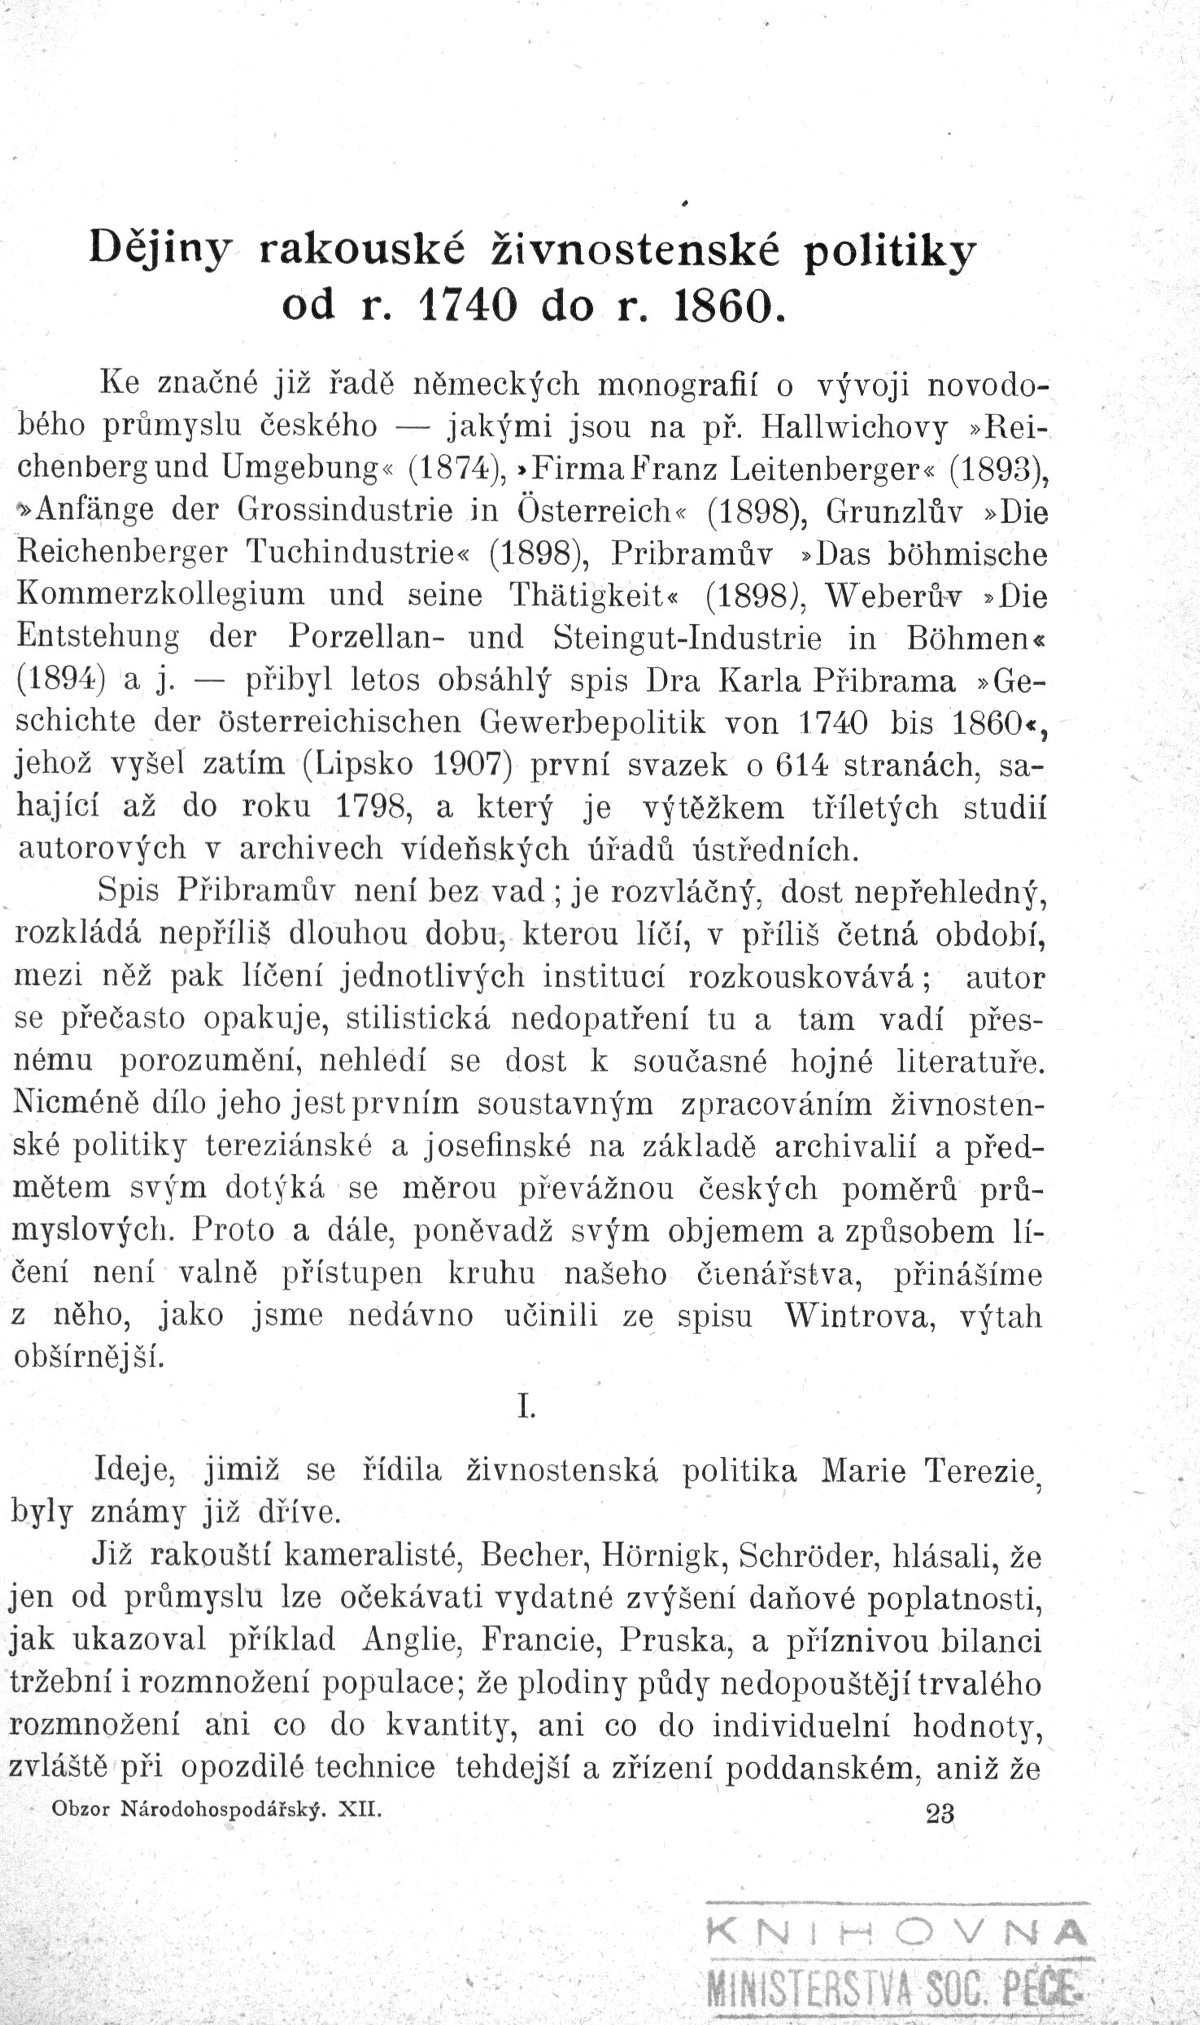 Dějiny rakouské živnostenské politiky od r. 1740 do r. 1860